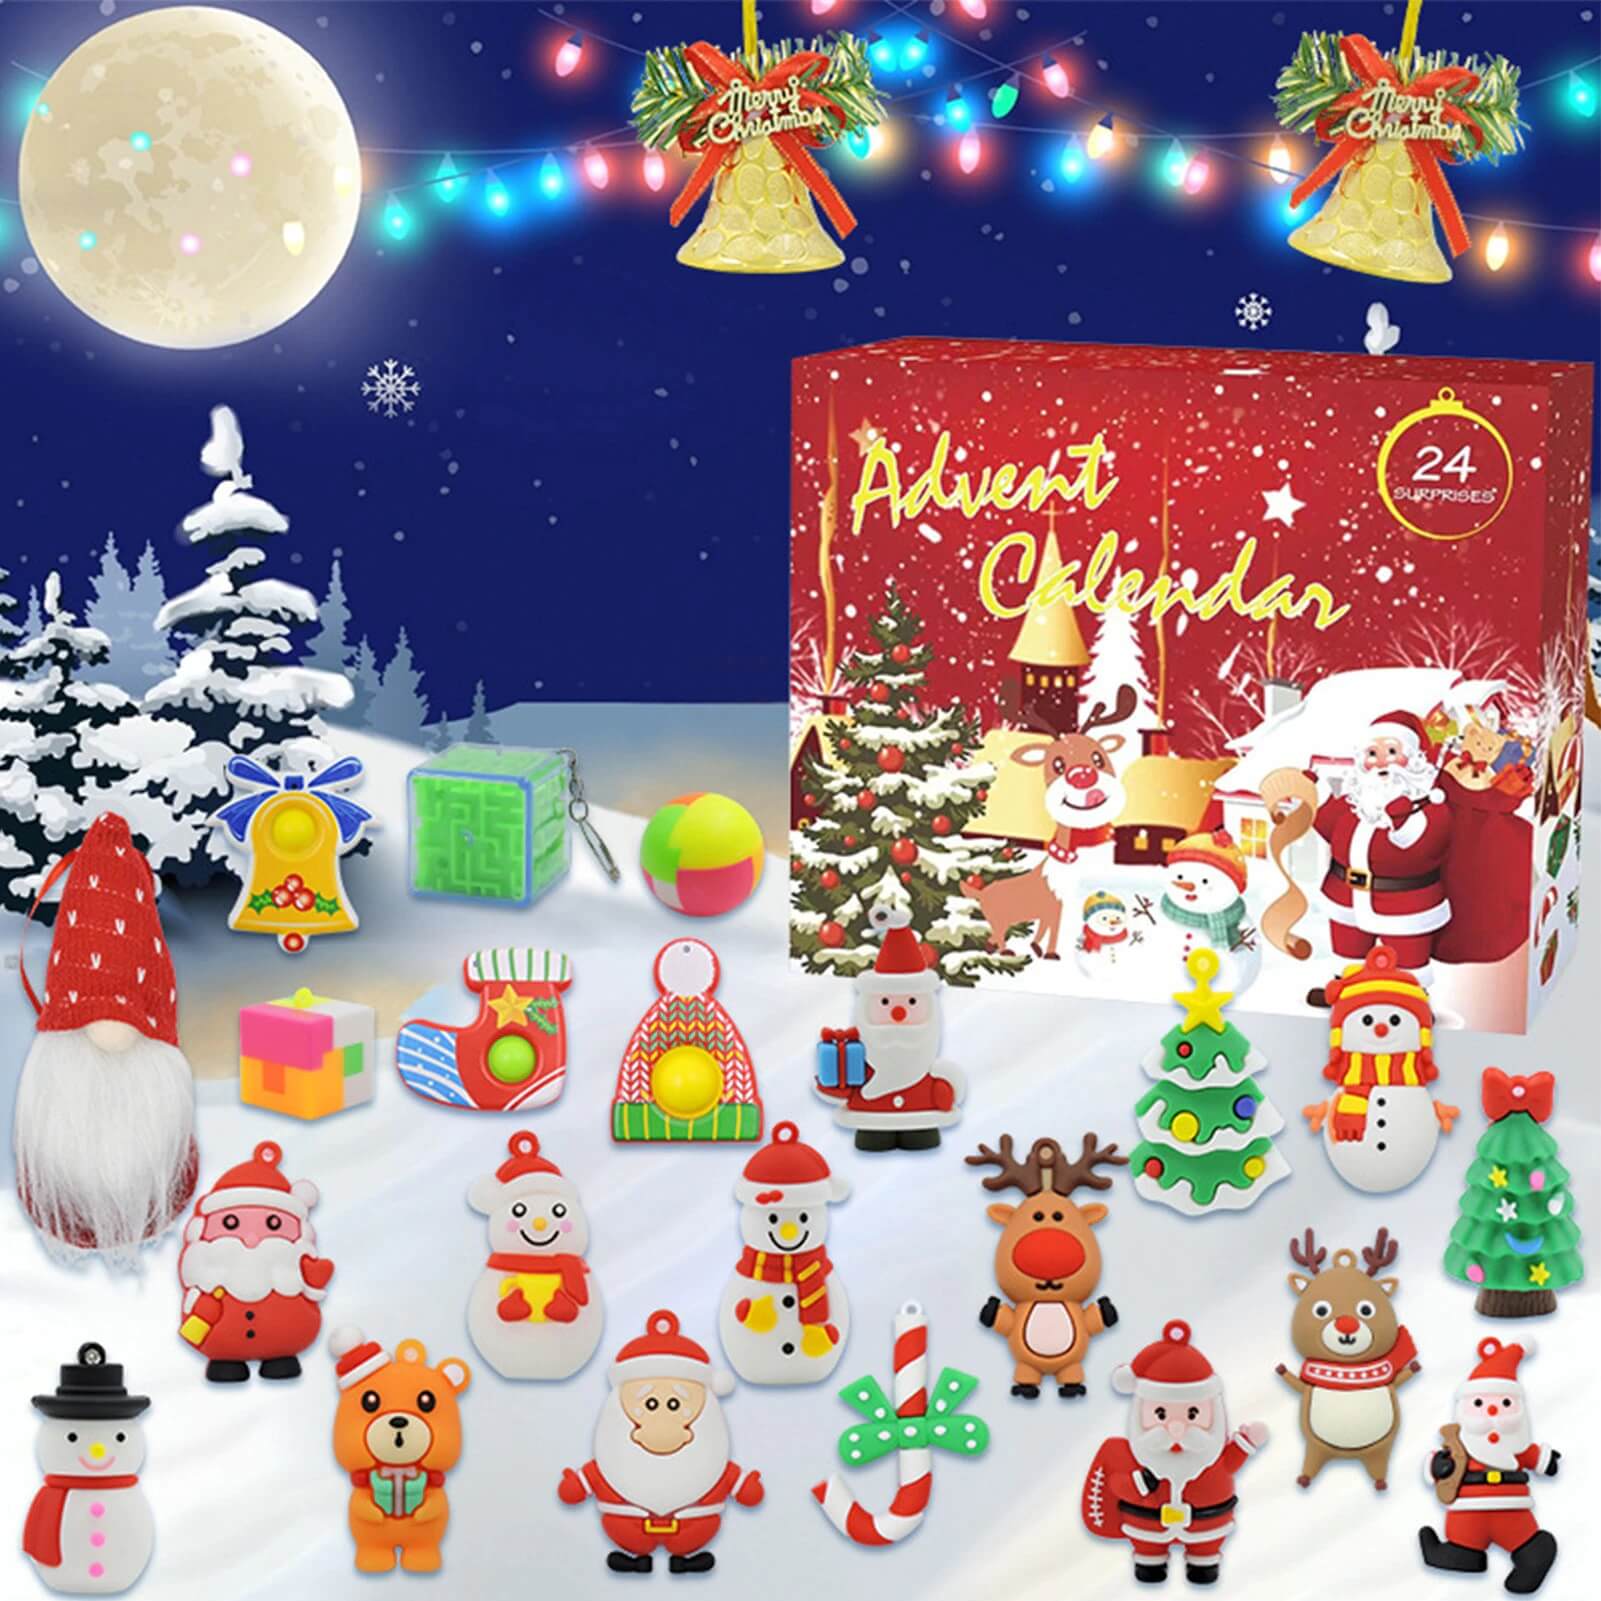 🎅Early Xmas Sale - Christmas Advent Calendar 2022